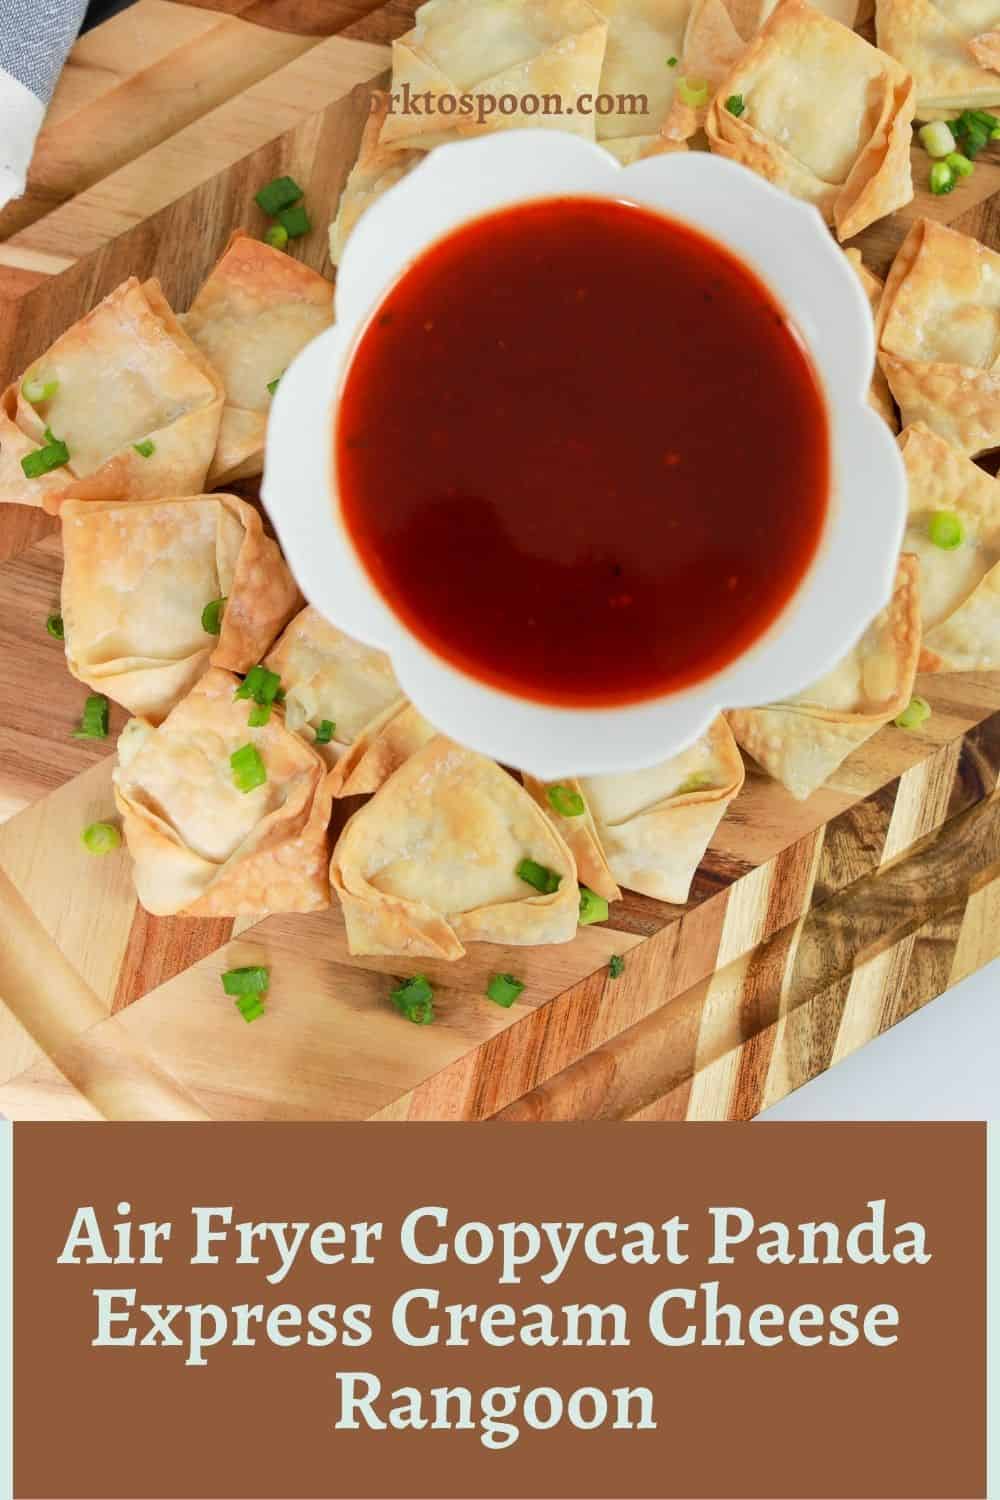 Air Fryer Copycat Panda Express Cream Cheese Rangoon